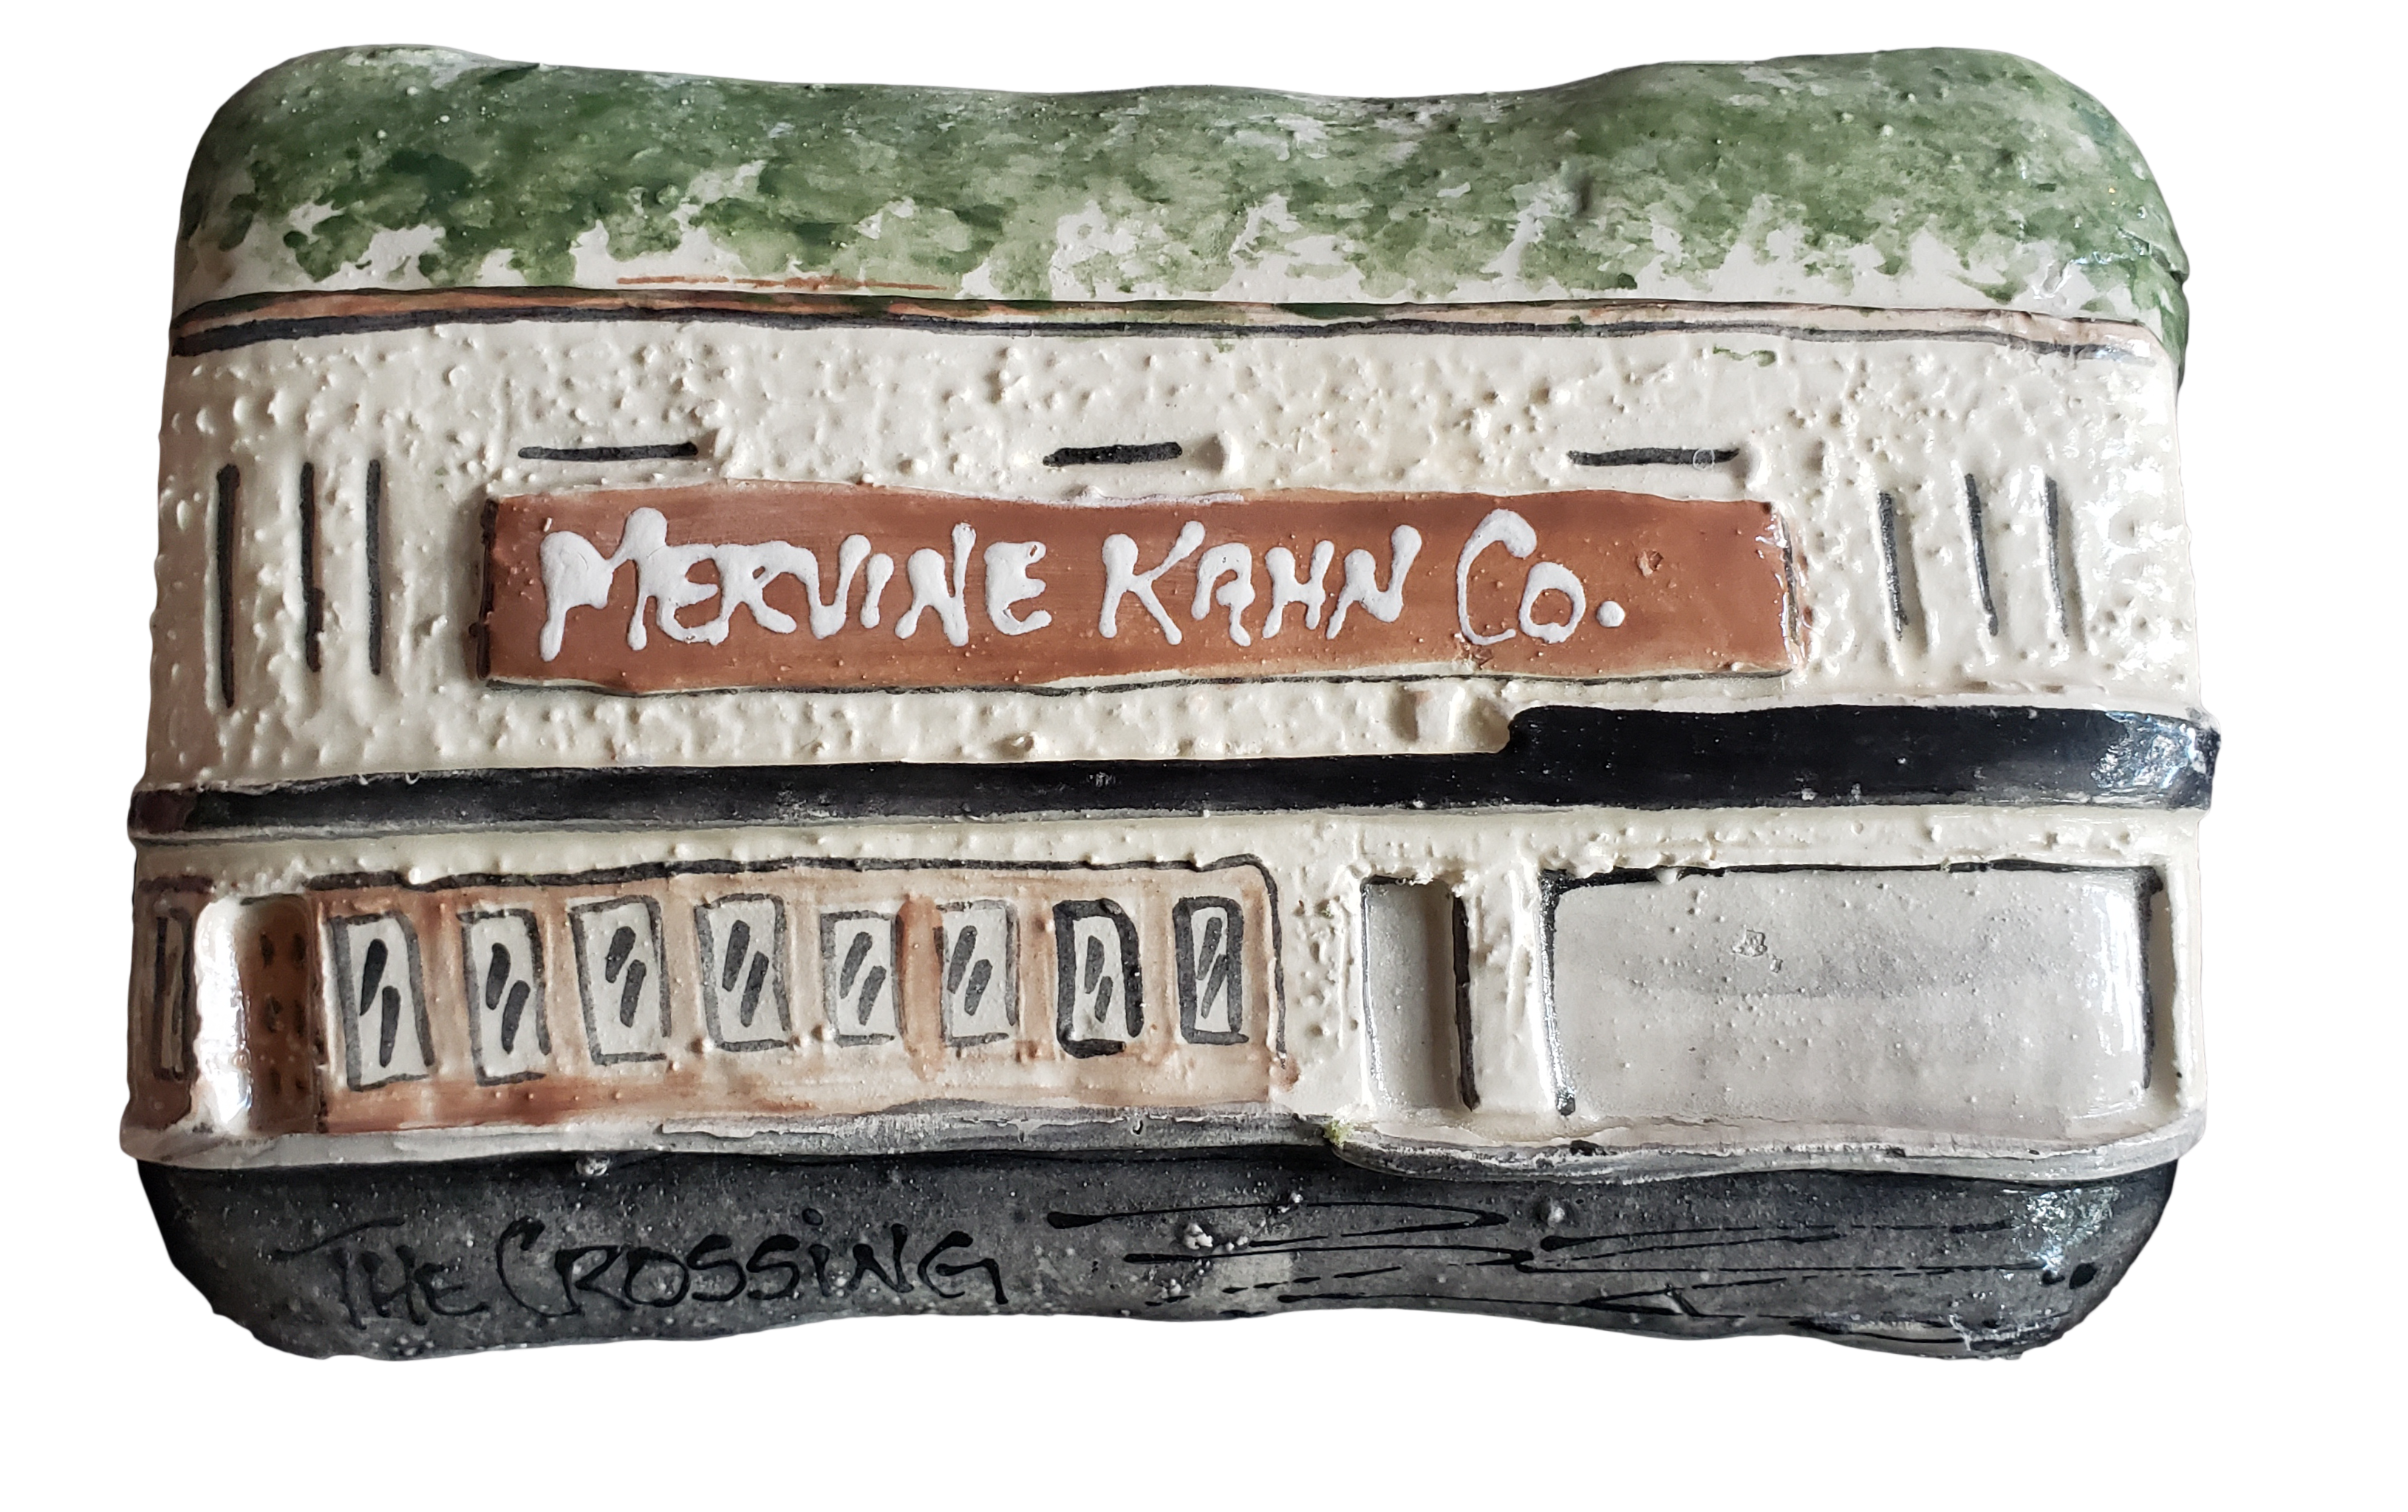 Mervine Kahn Co. The Crossing